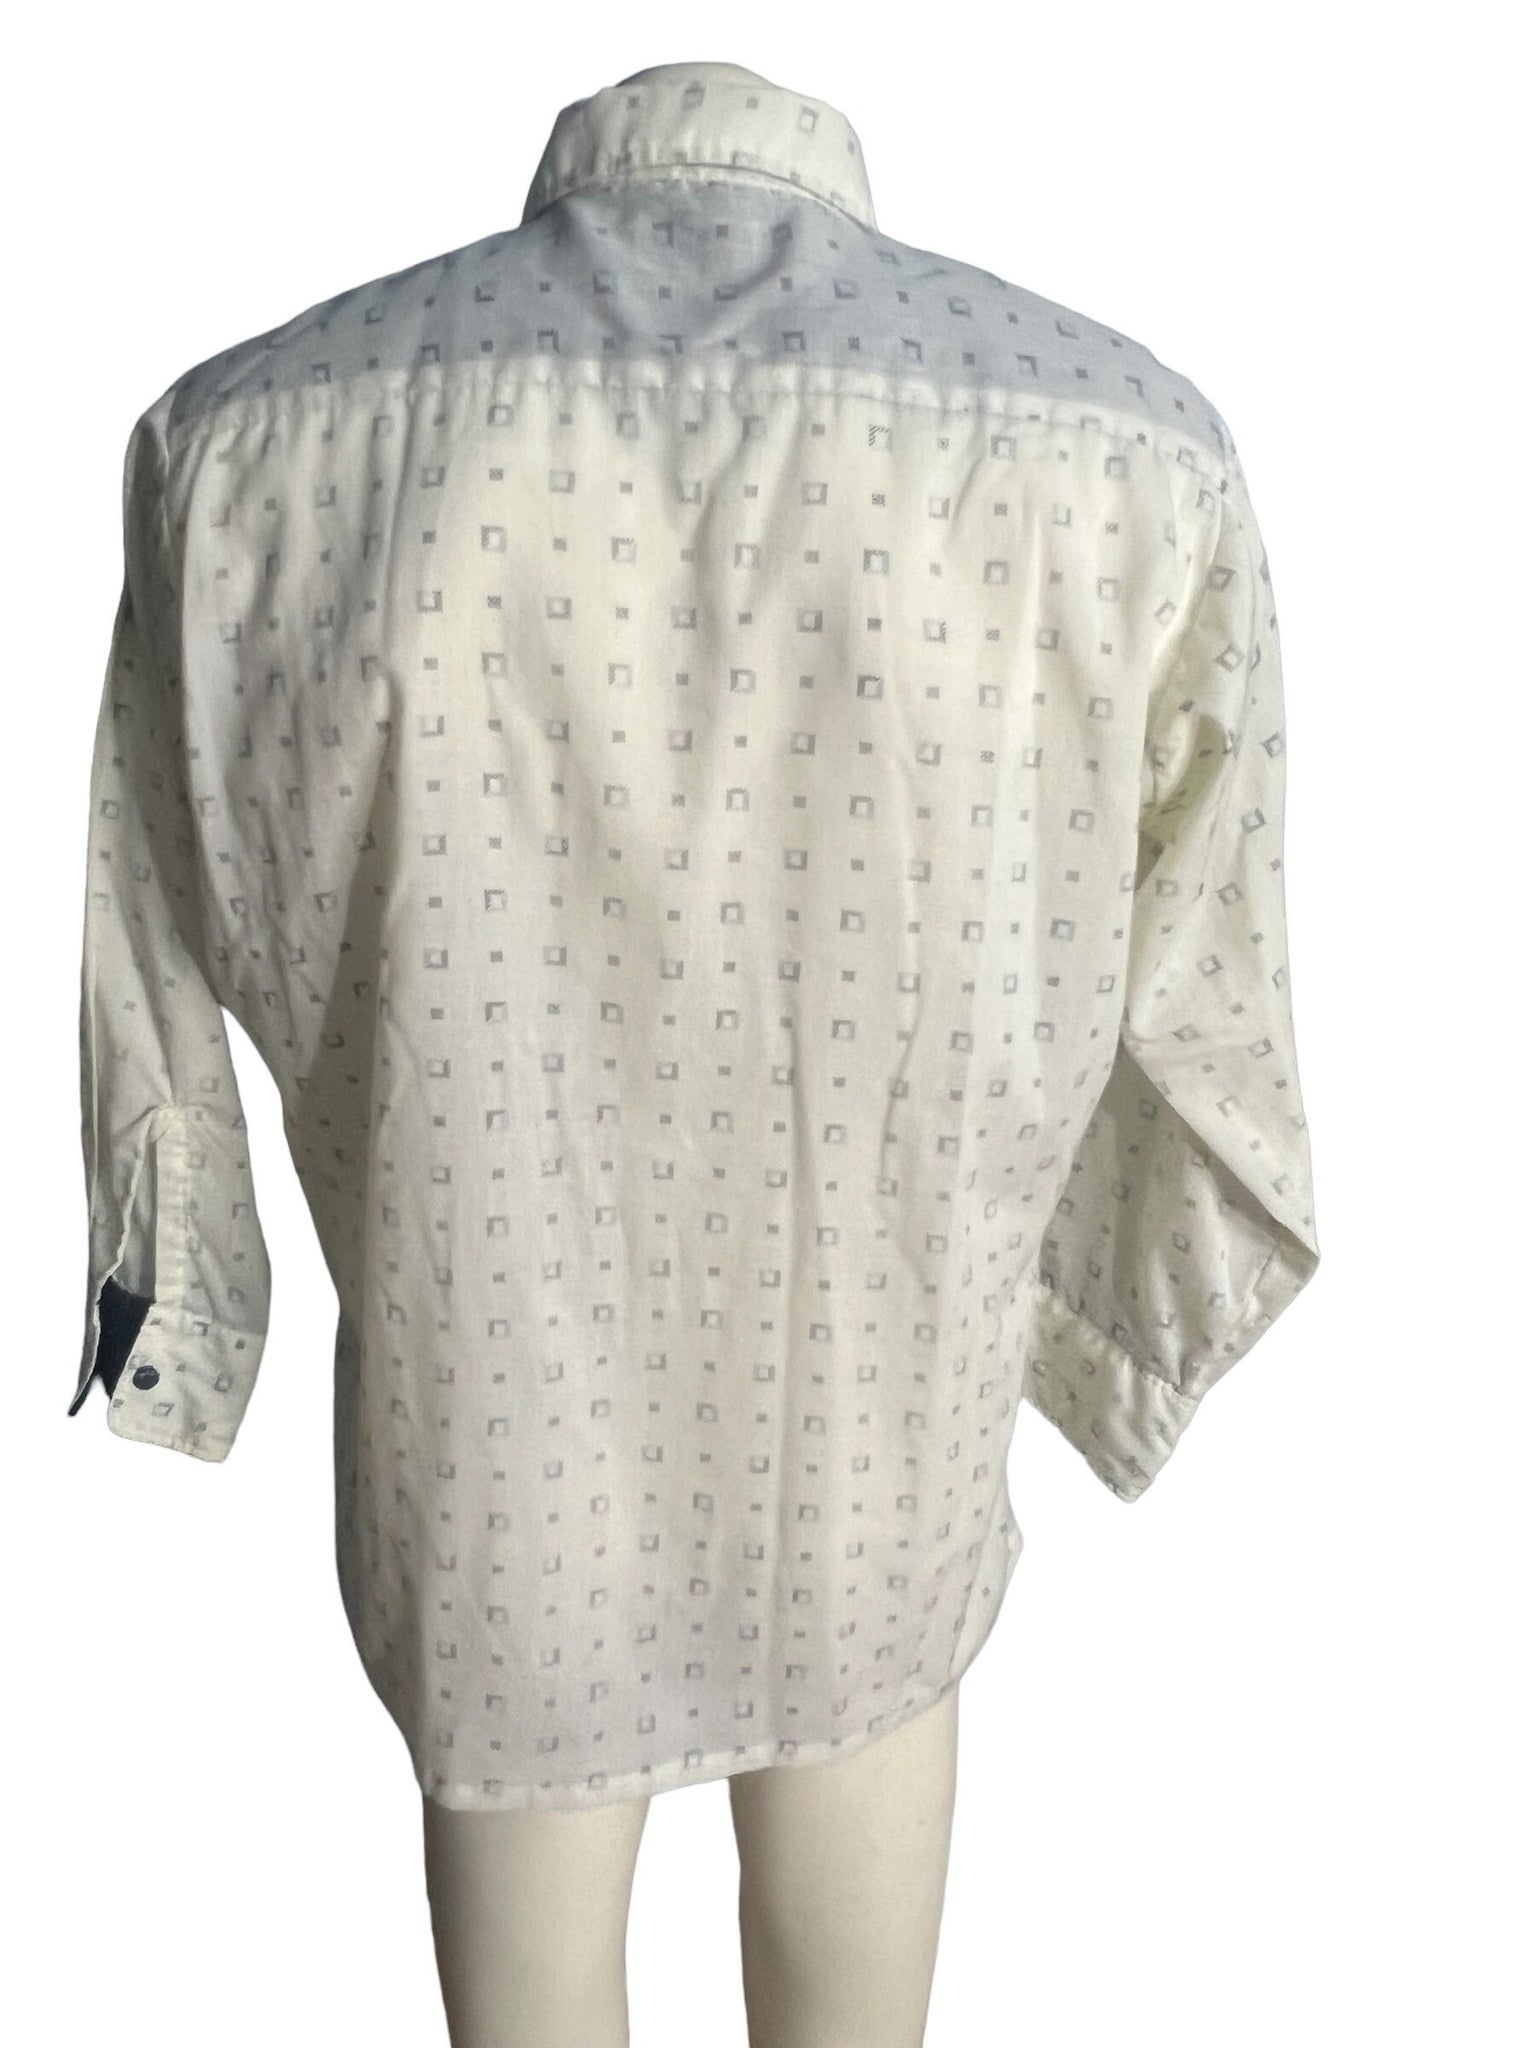 Vintage 70's men's shirt Paul Arnold 16.5 33